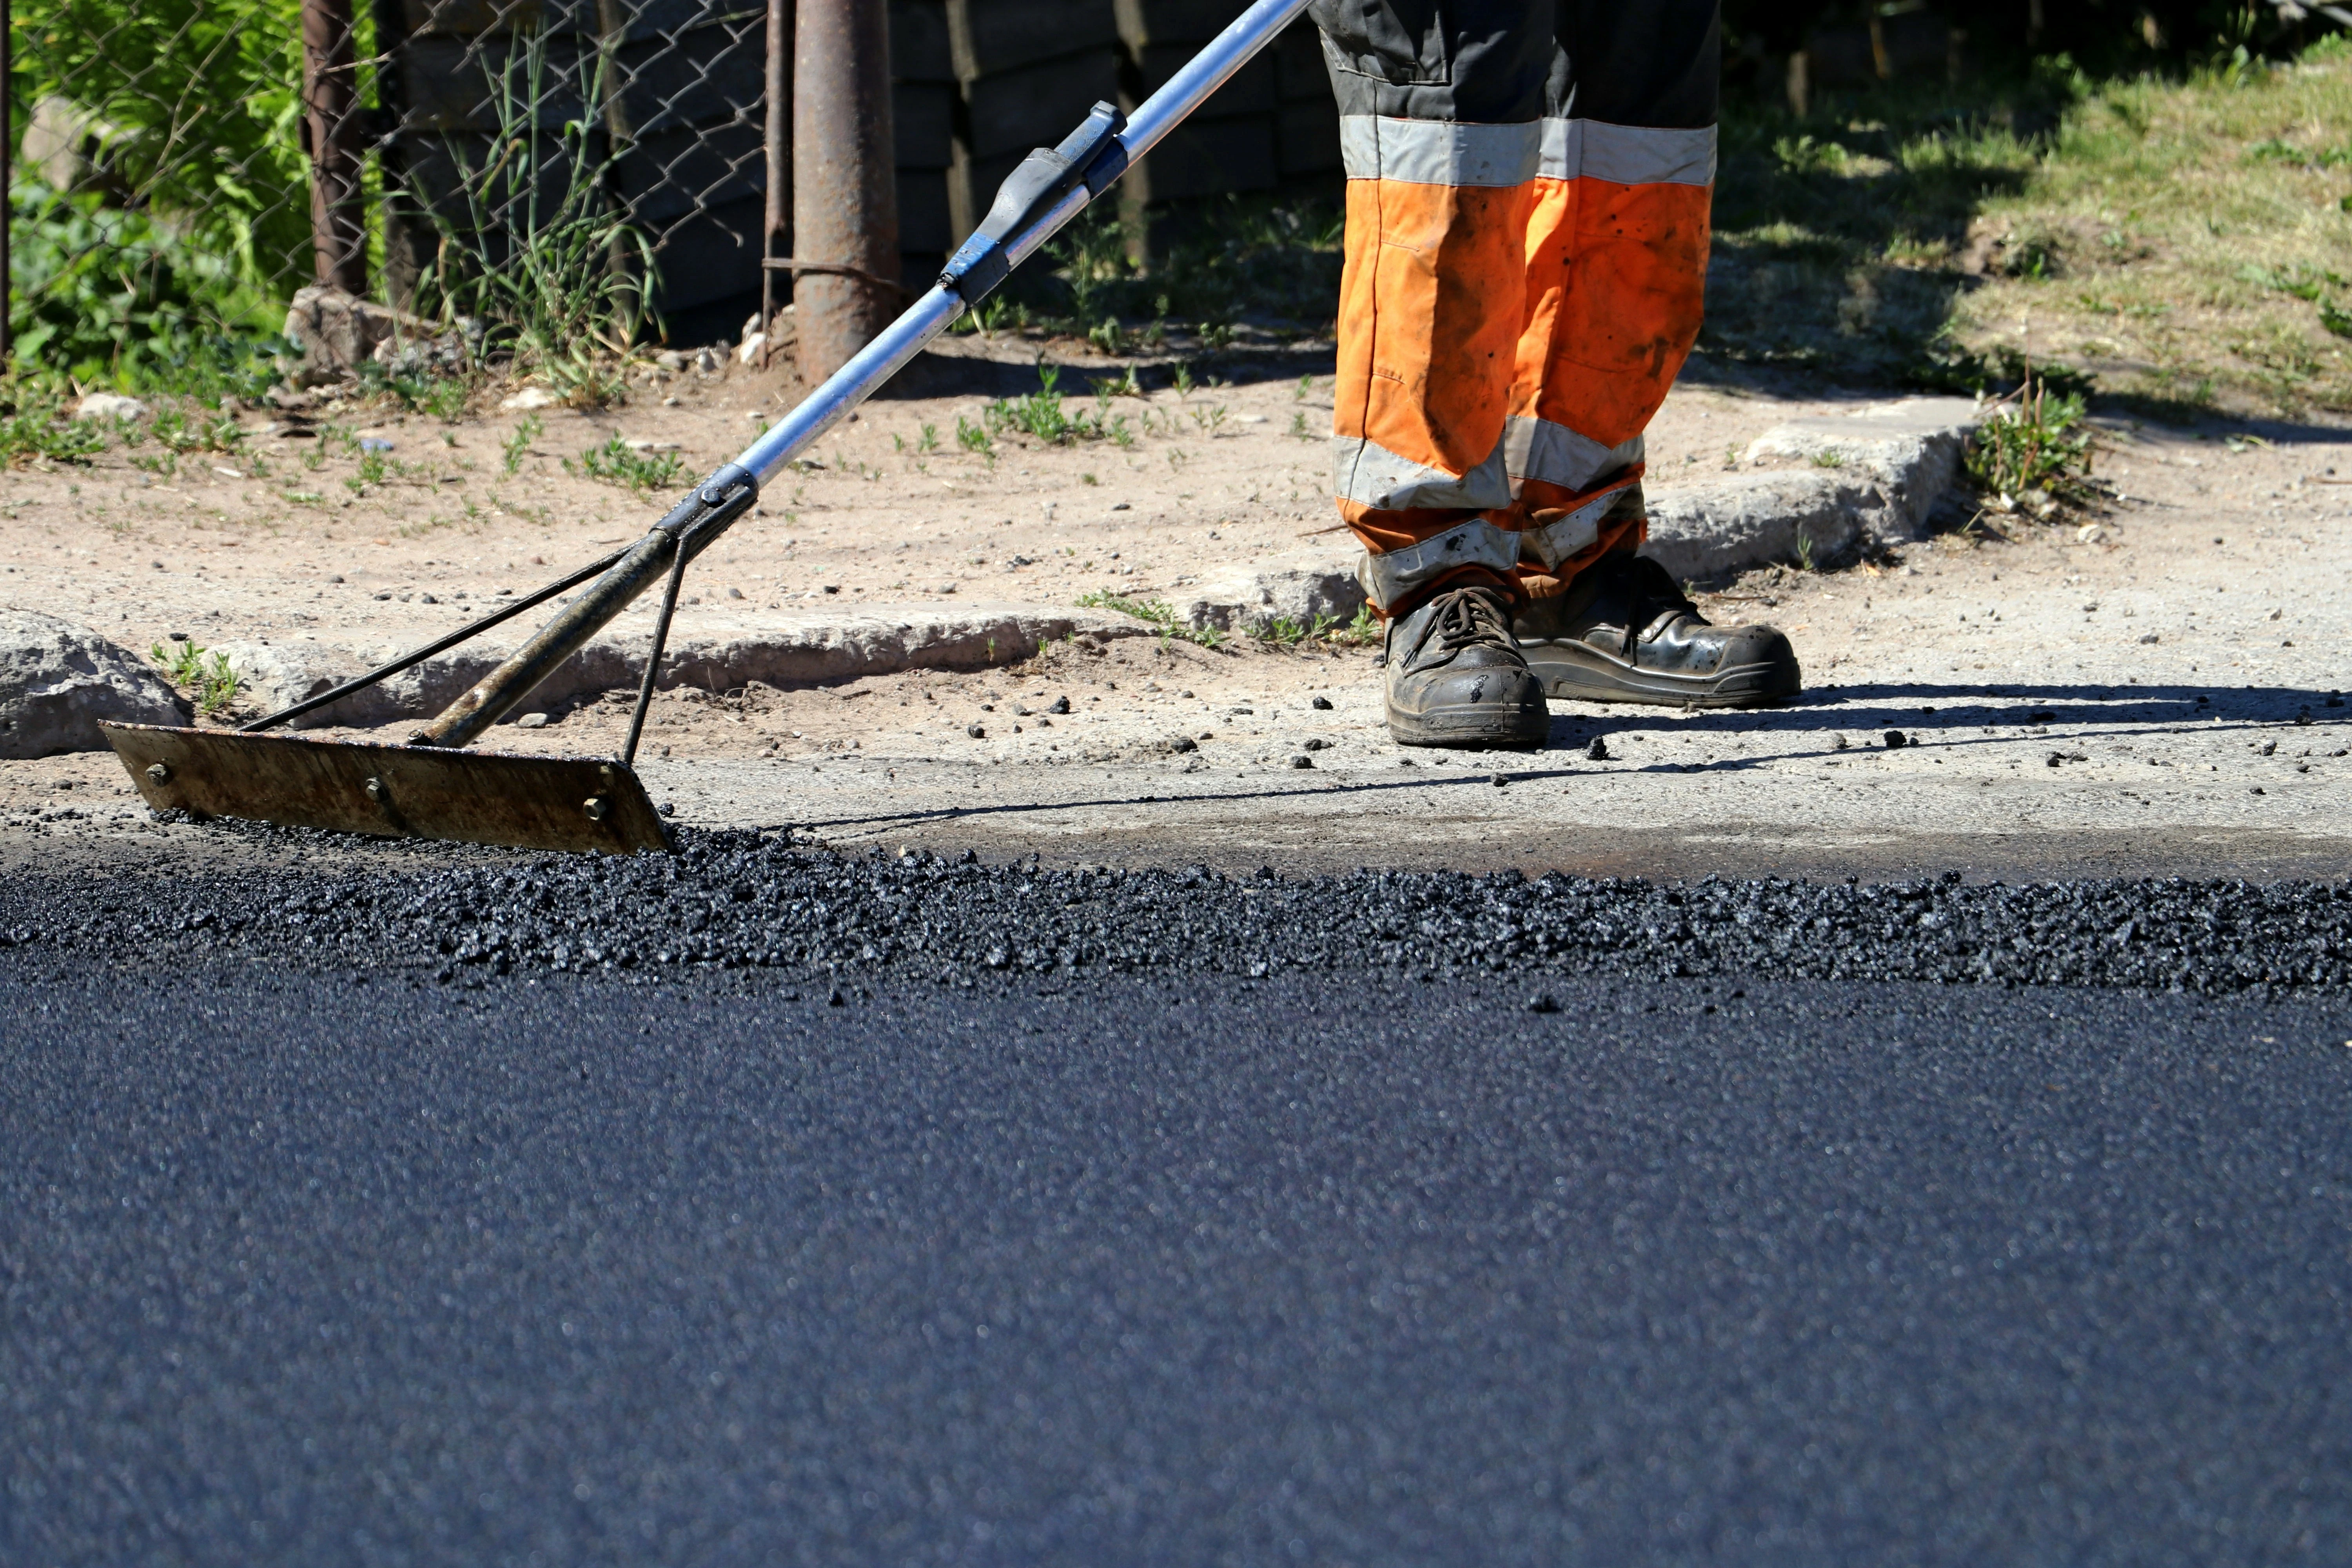 Worker in orange safety gear smoothing freshly laid asphalt during driveway repair.